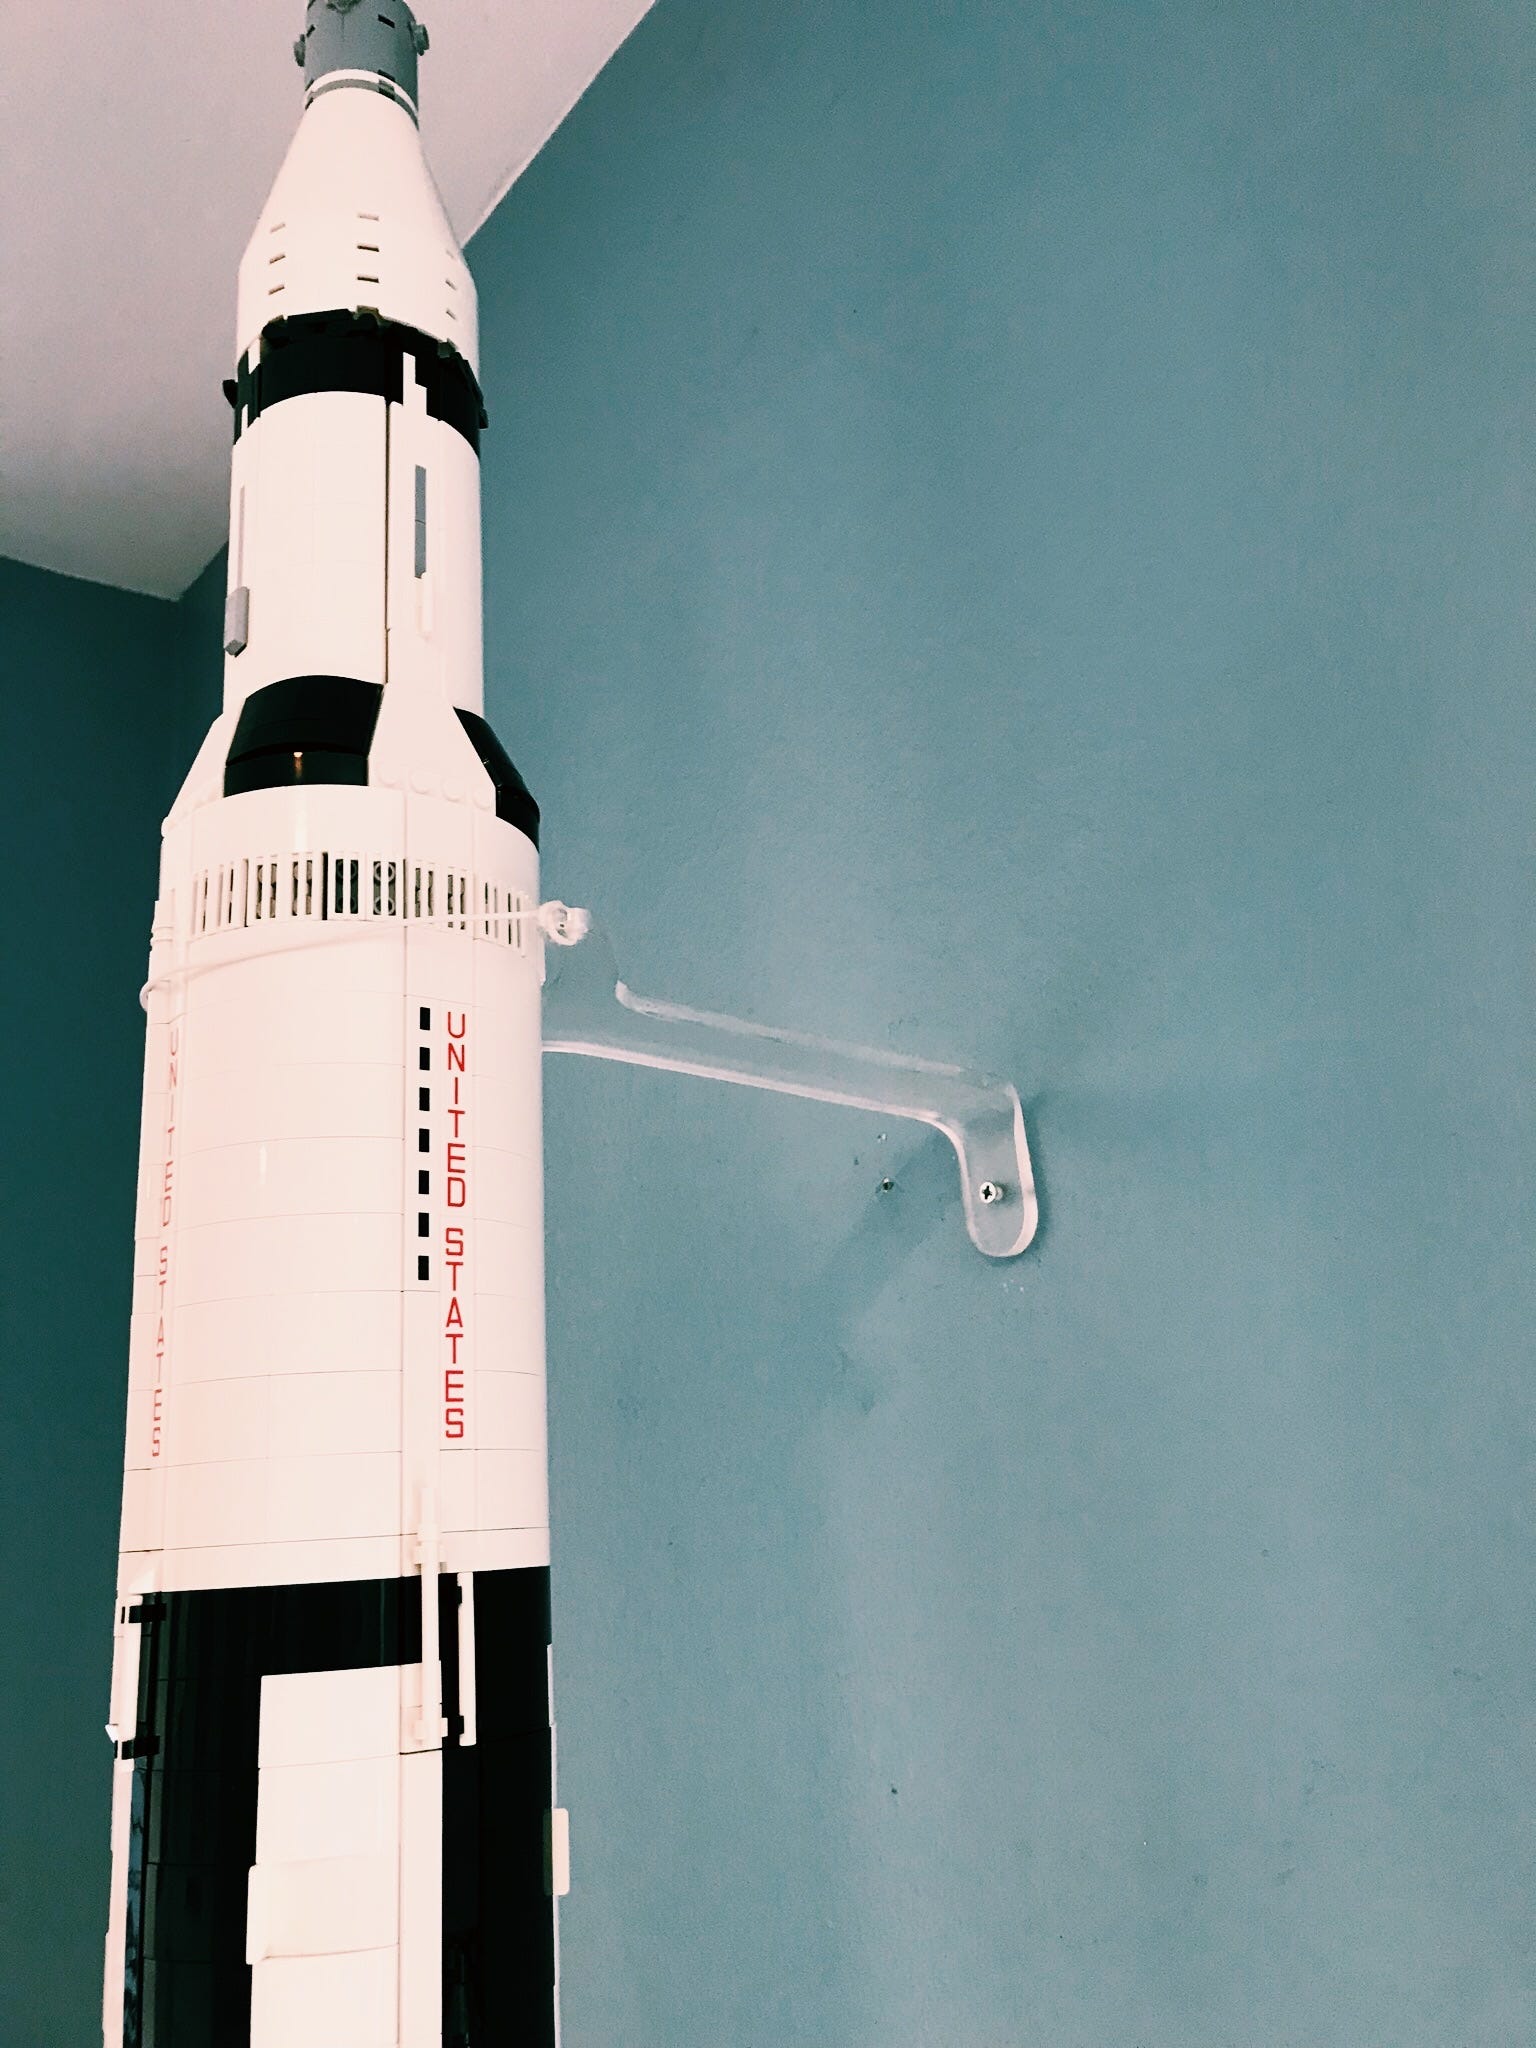 Lego Saturn V Display Ideas